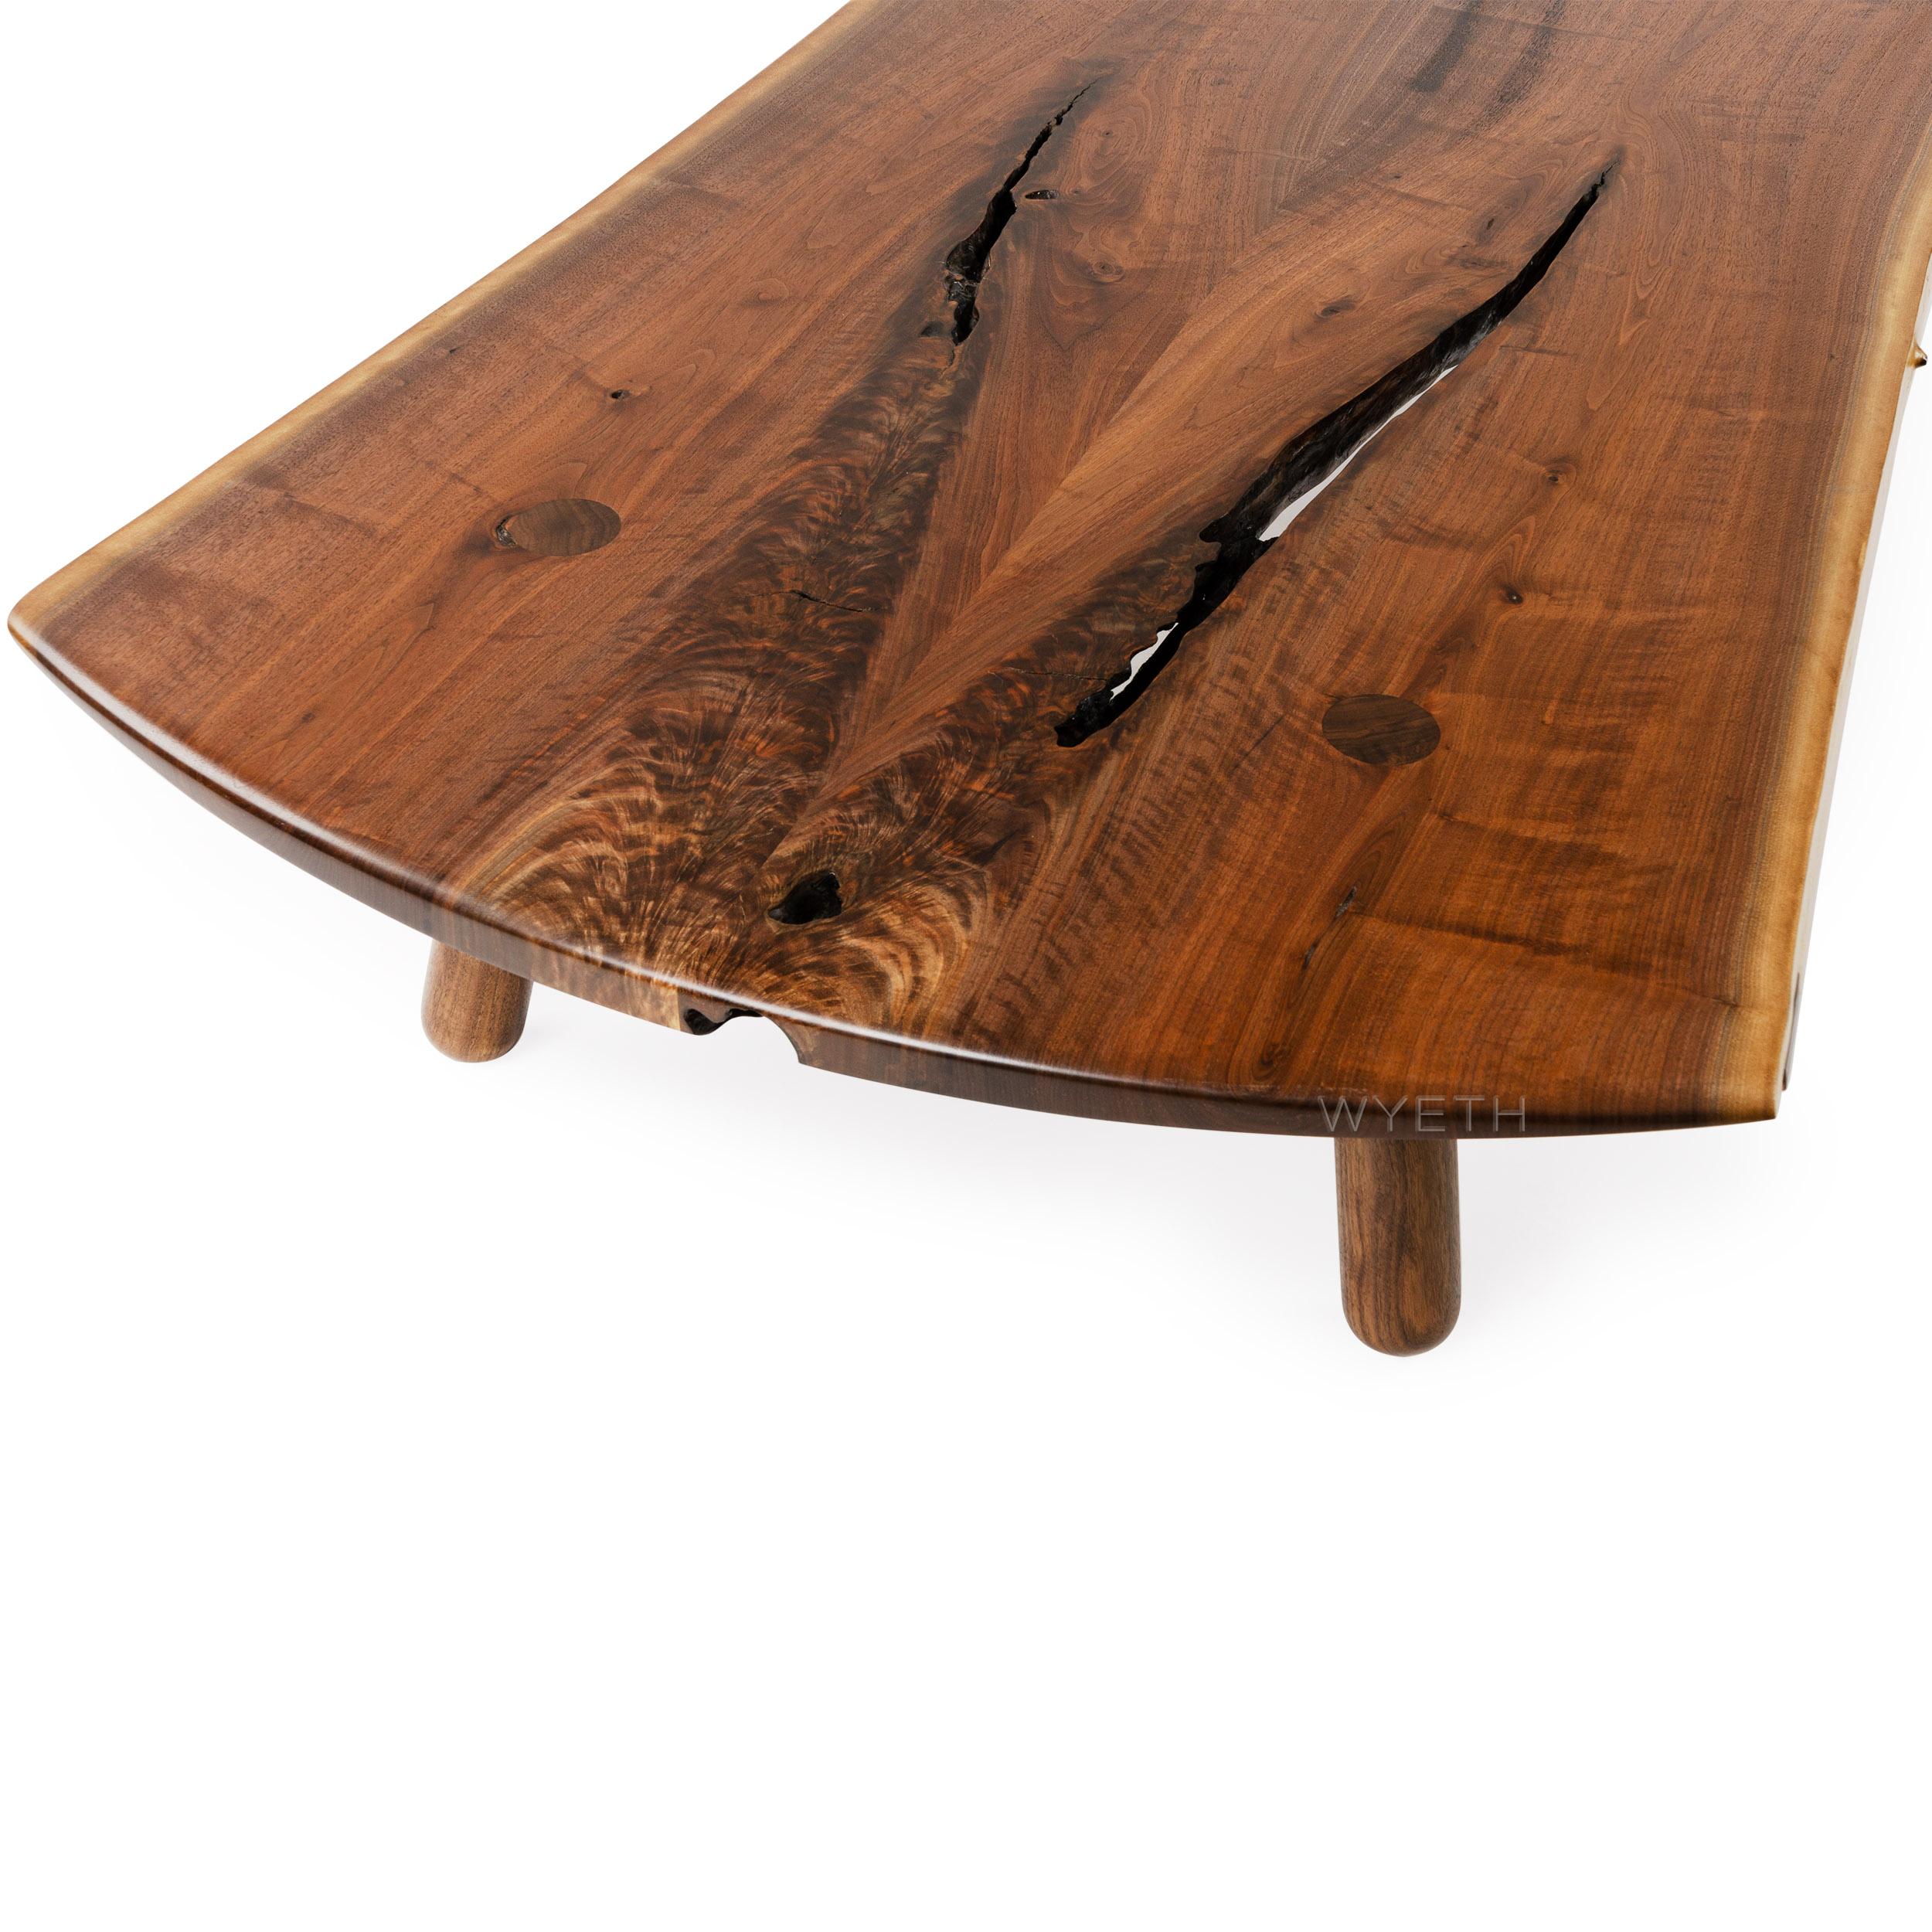 Walnut WYETH Original Sliding Dovetail Low Table